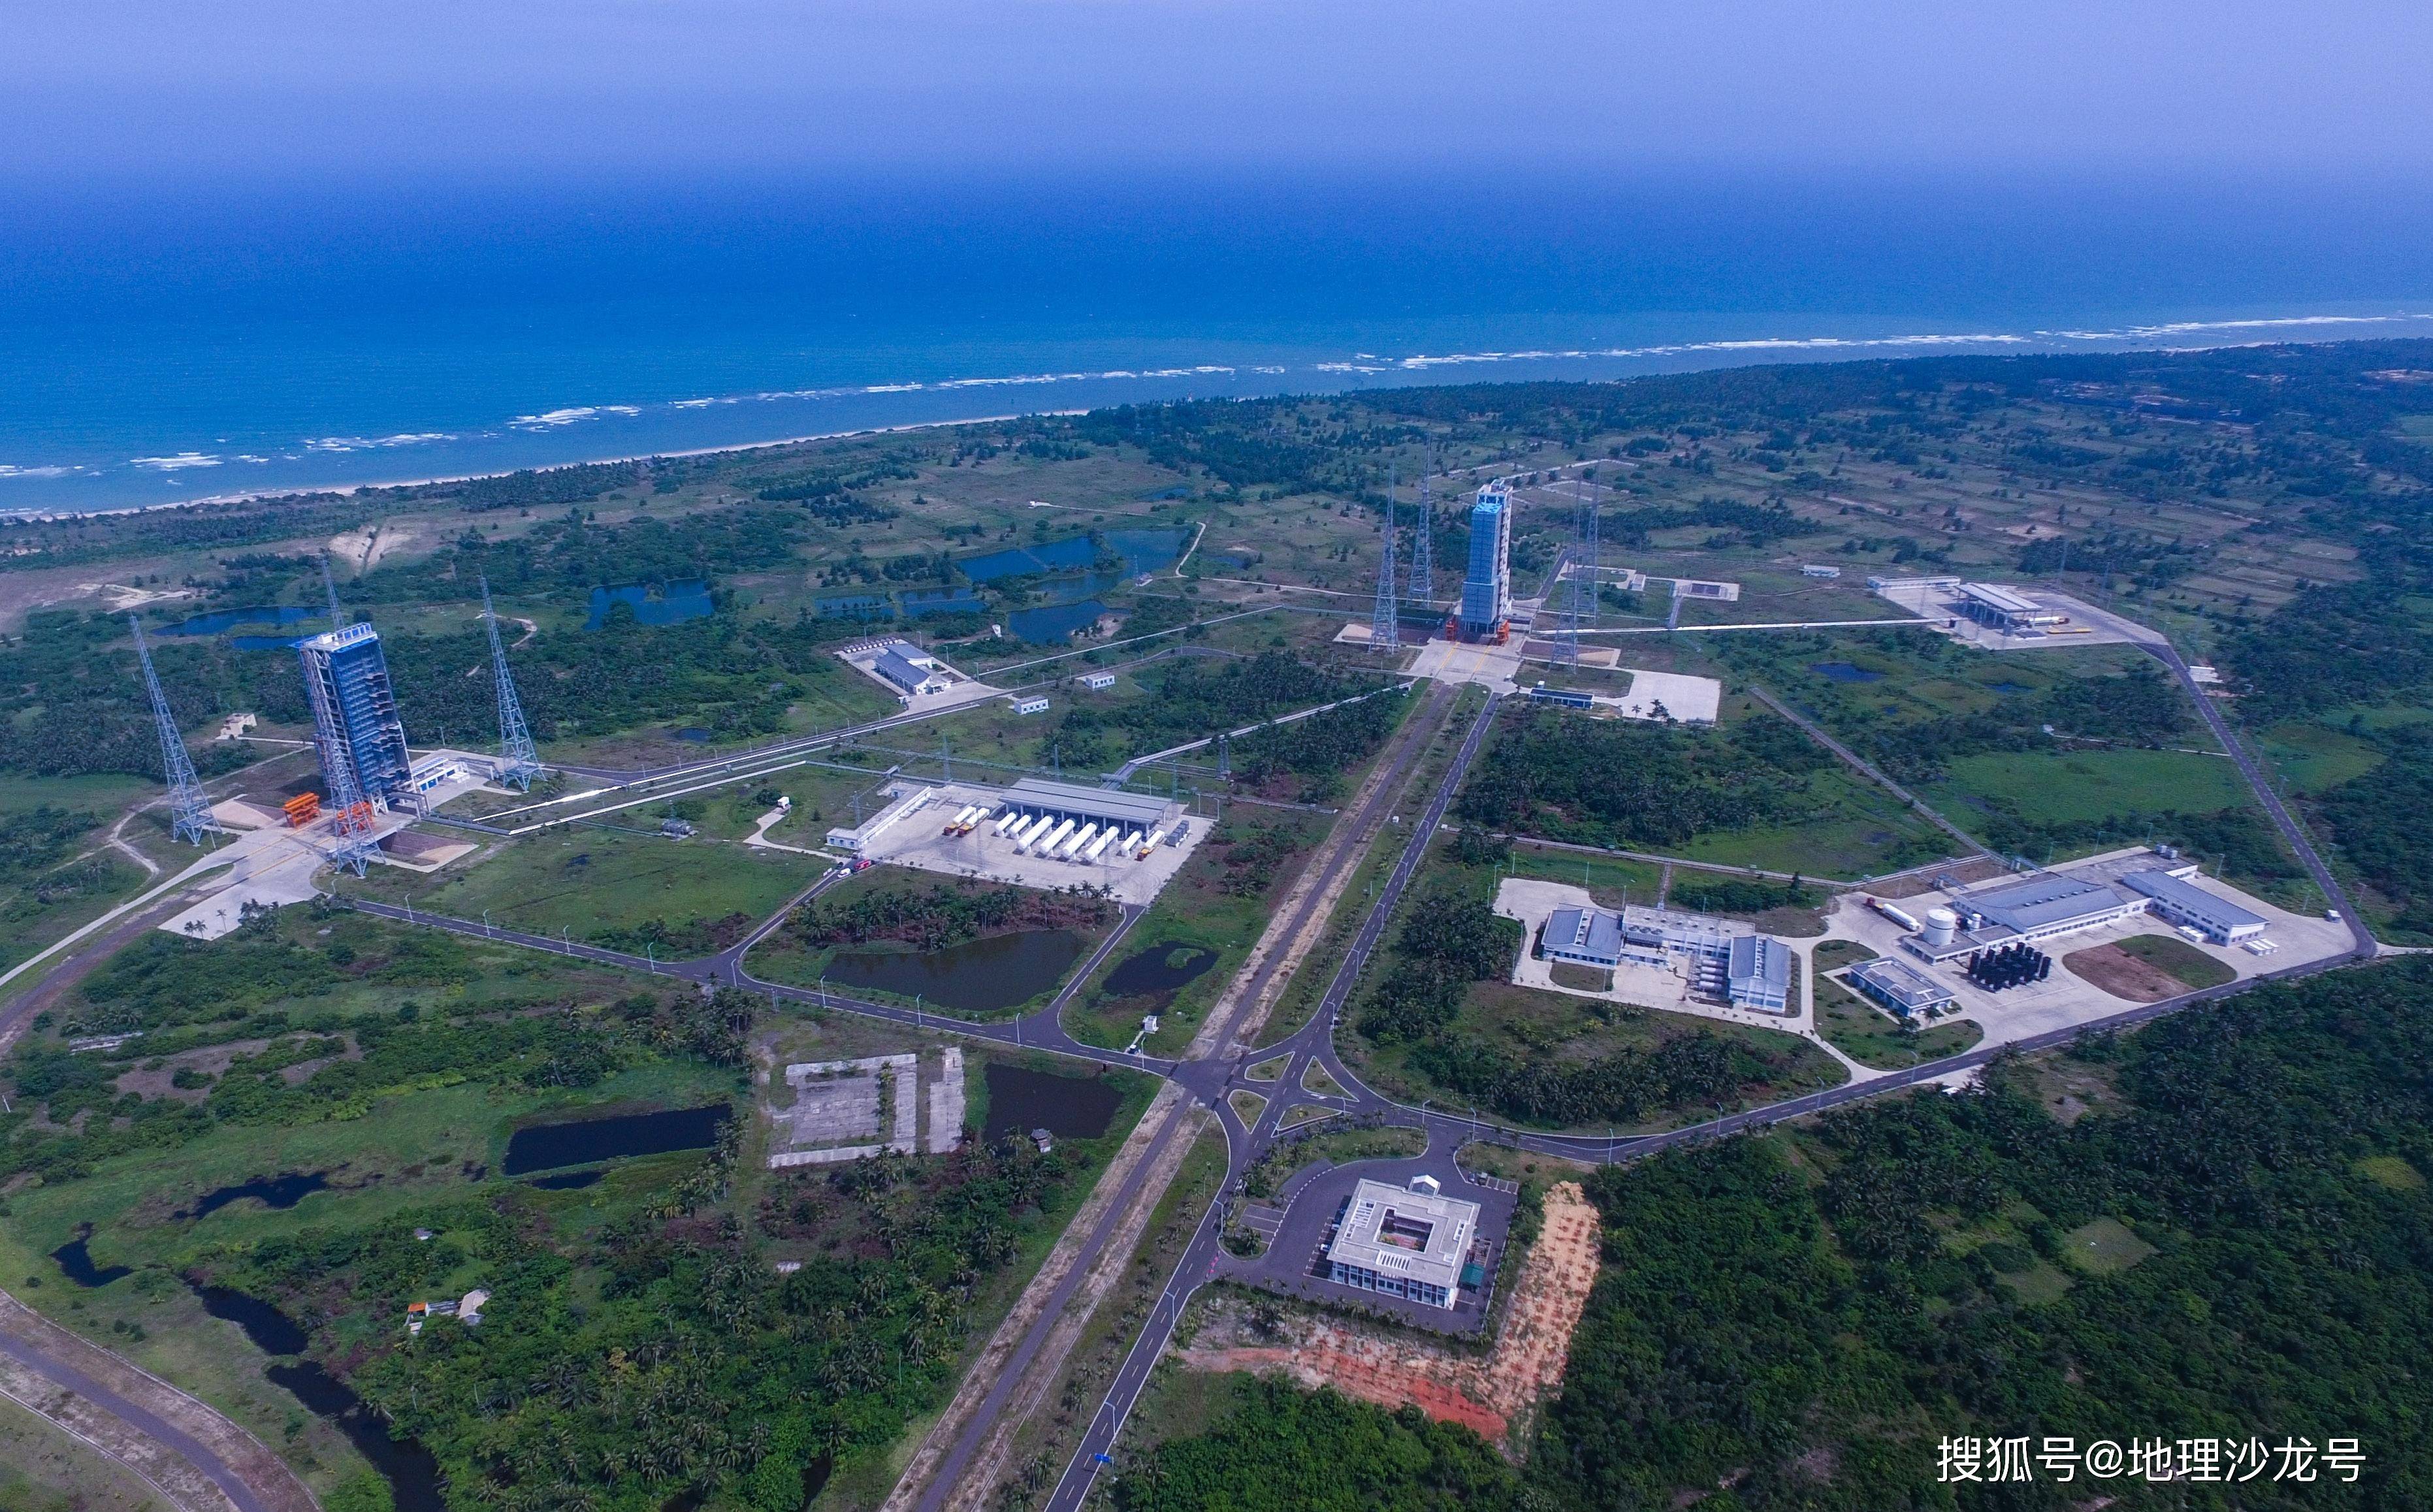 宁波商业航天发射中心图片